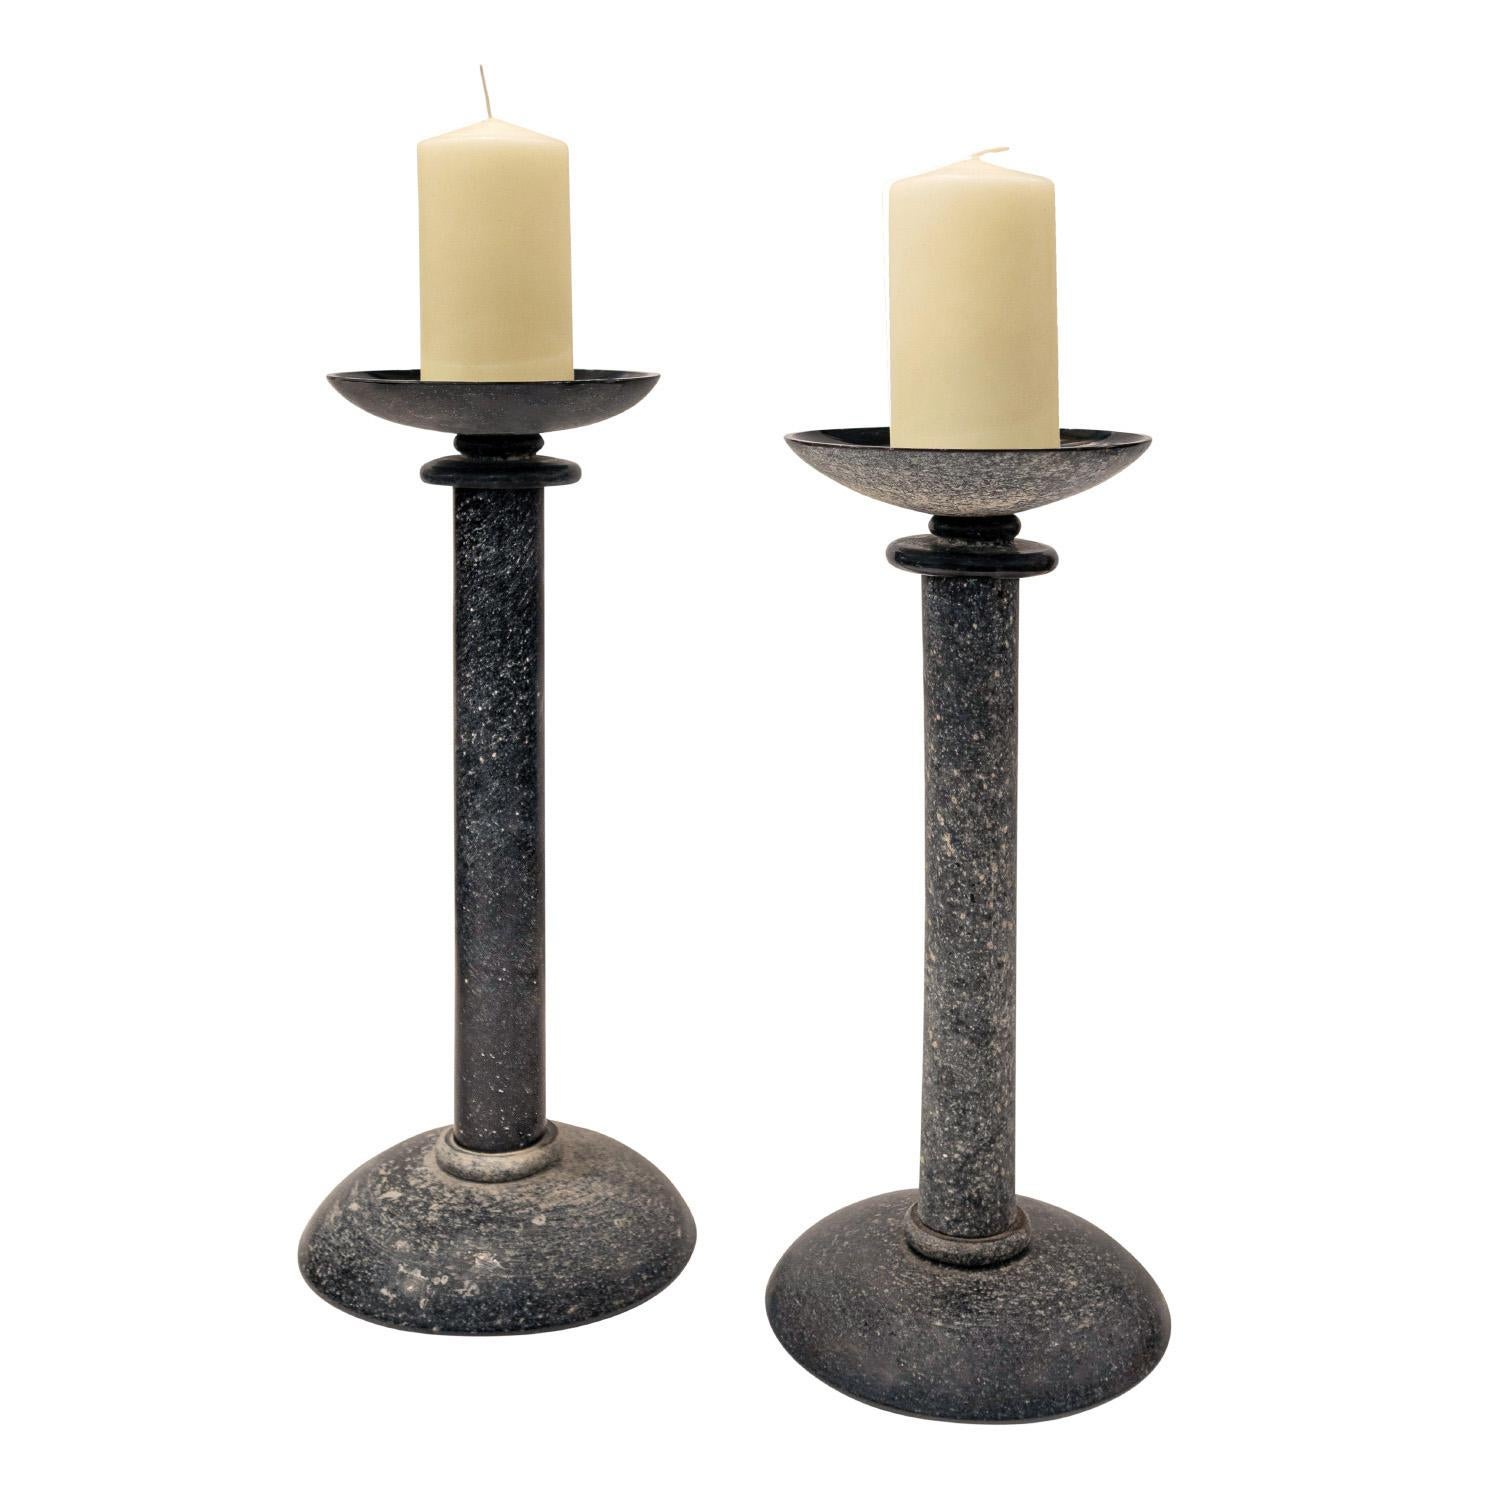 Seltenes Paar mundgeblasener Kerzenhalter aus schwarzem Glas mit Scavo-Finish (rau) von Seguso Vetri d'Arte (Murano) für Karl Springer, Amerikaner, 1980er Jahre (signiert auf der Unterseite 